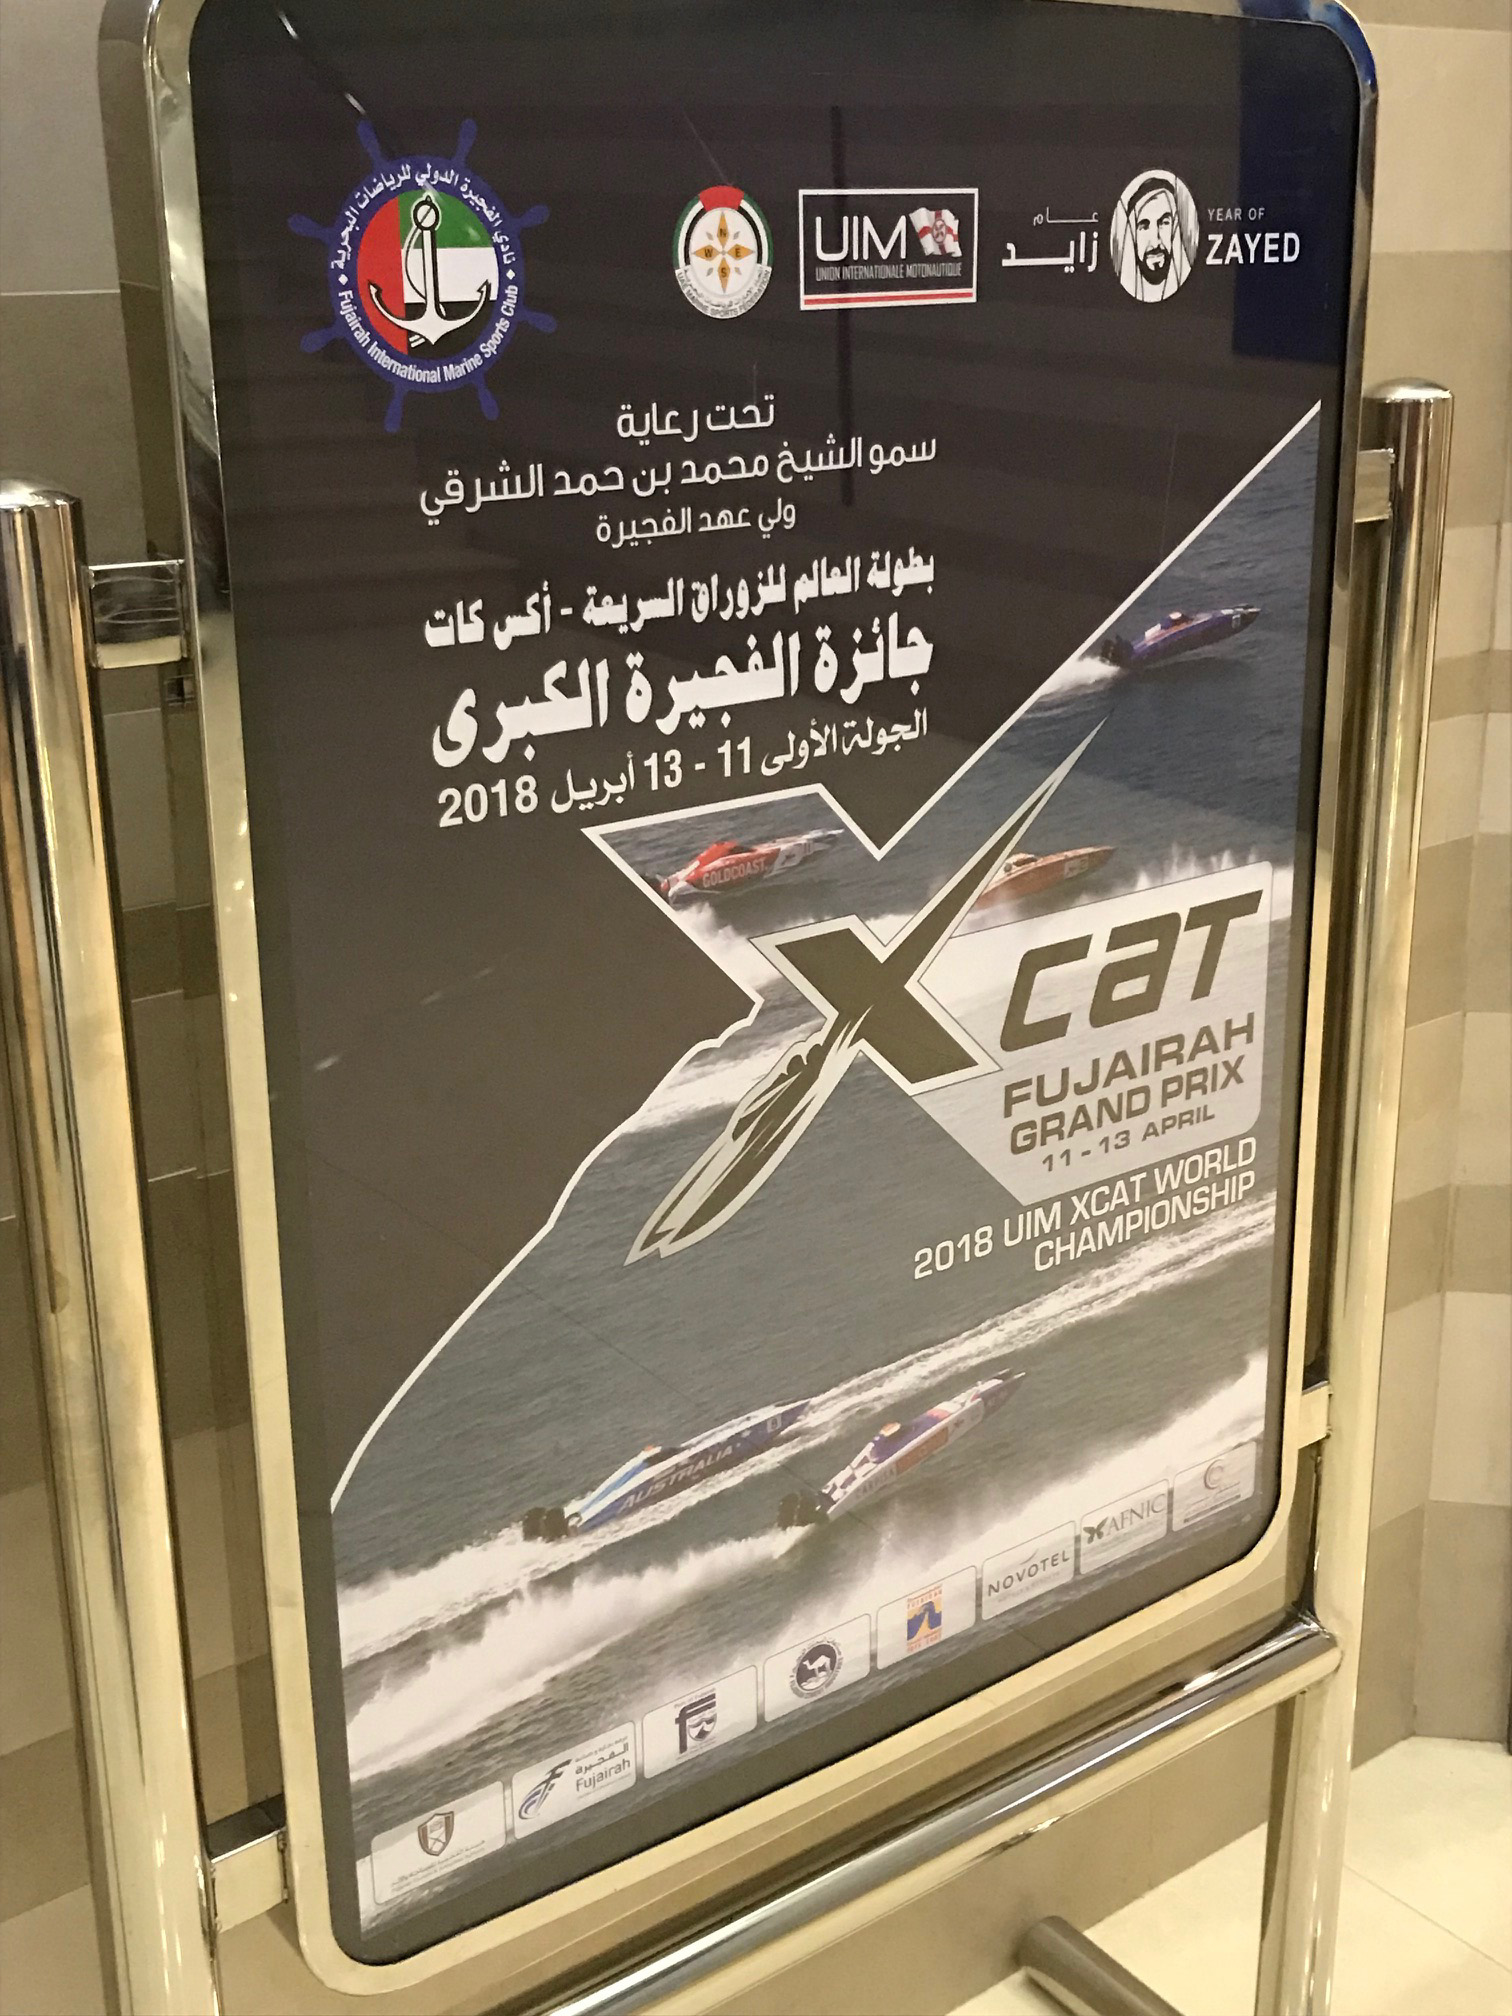 Fujairah Race 1 2018